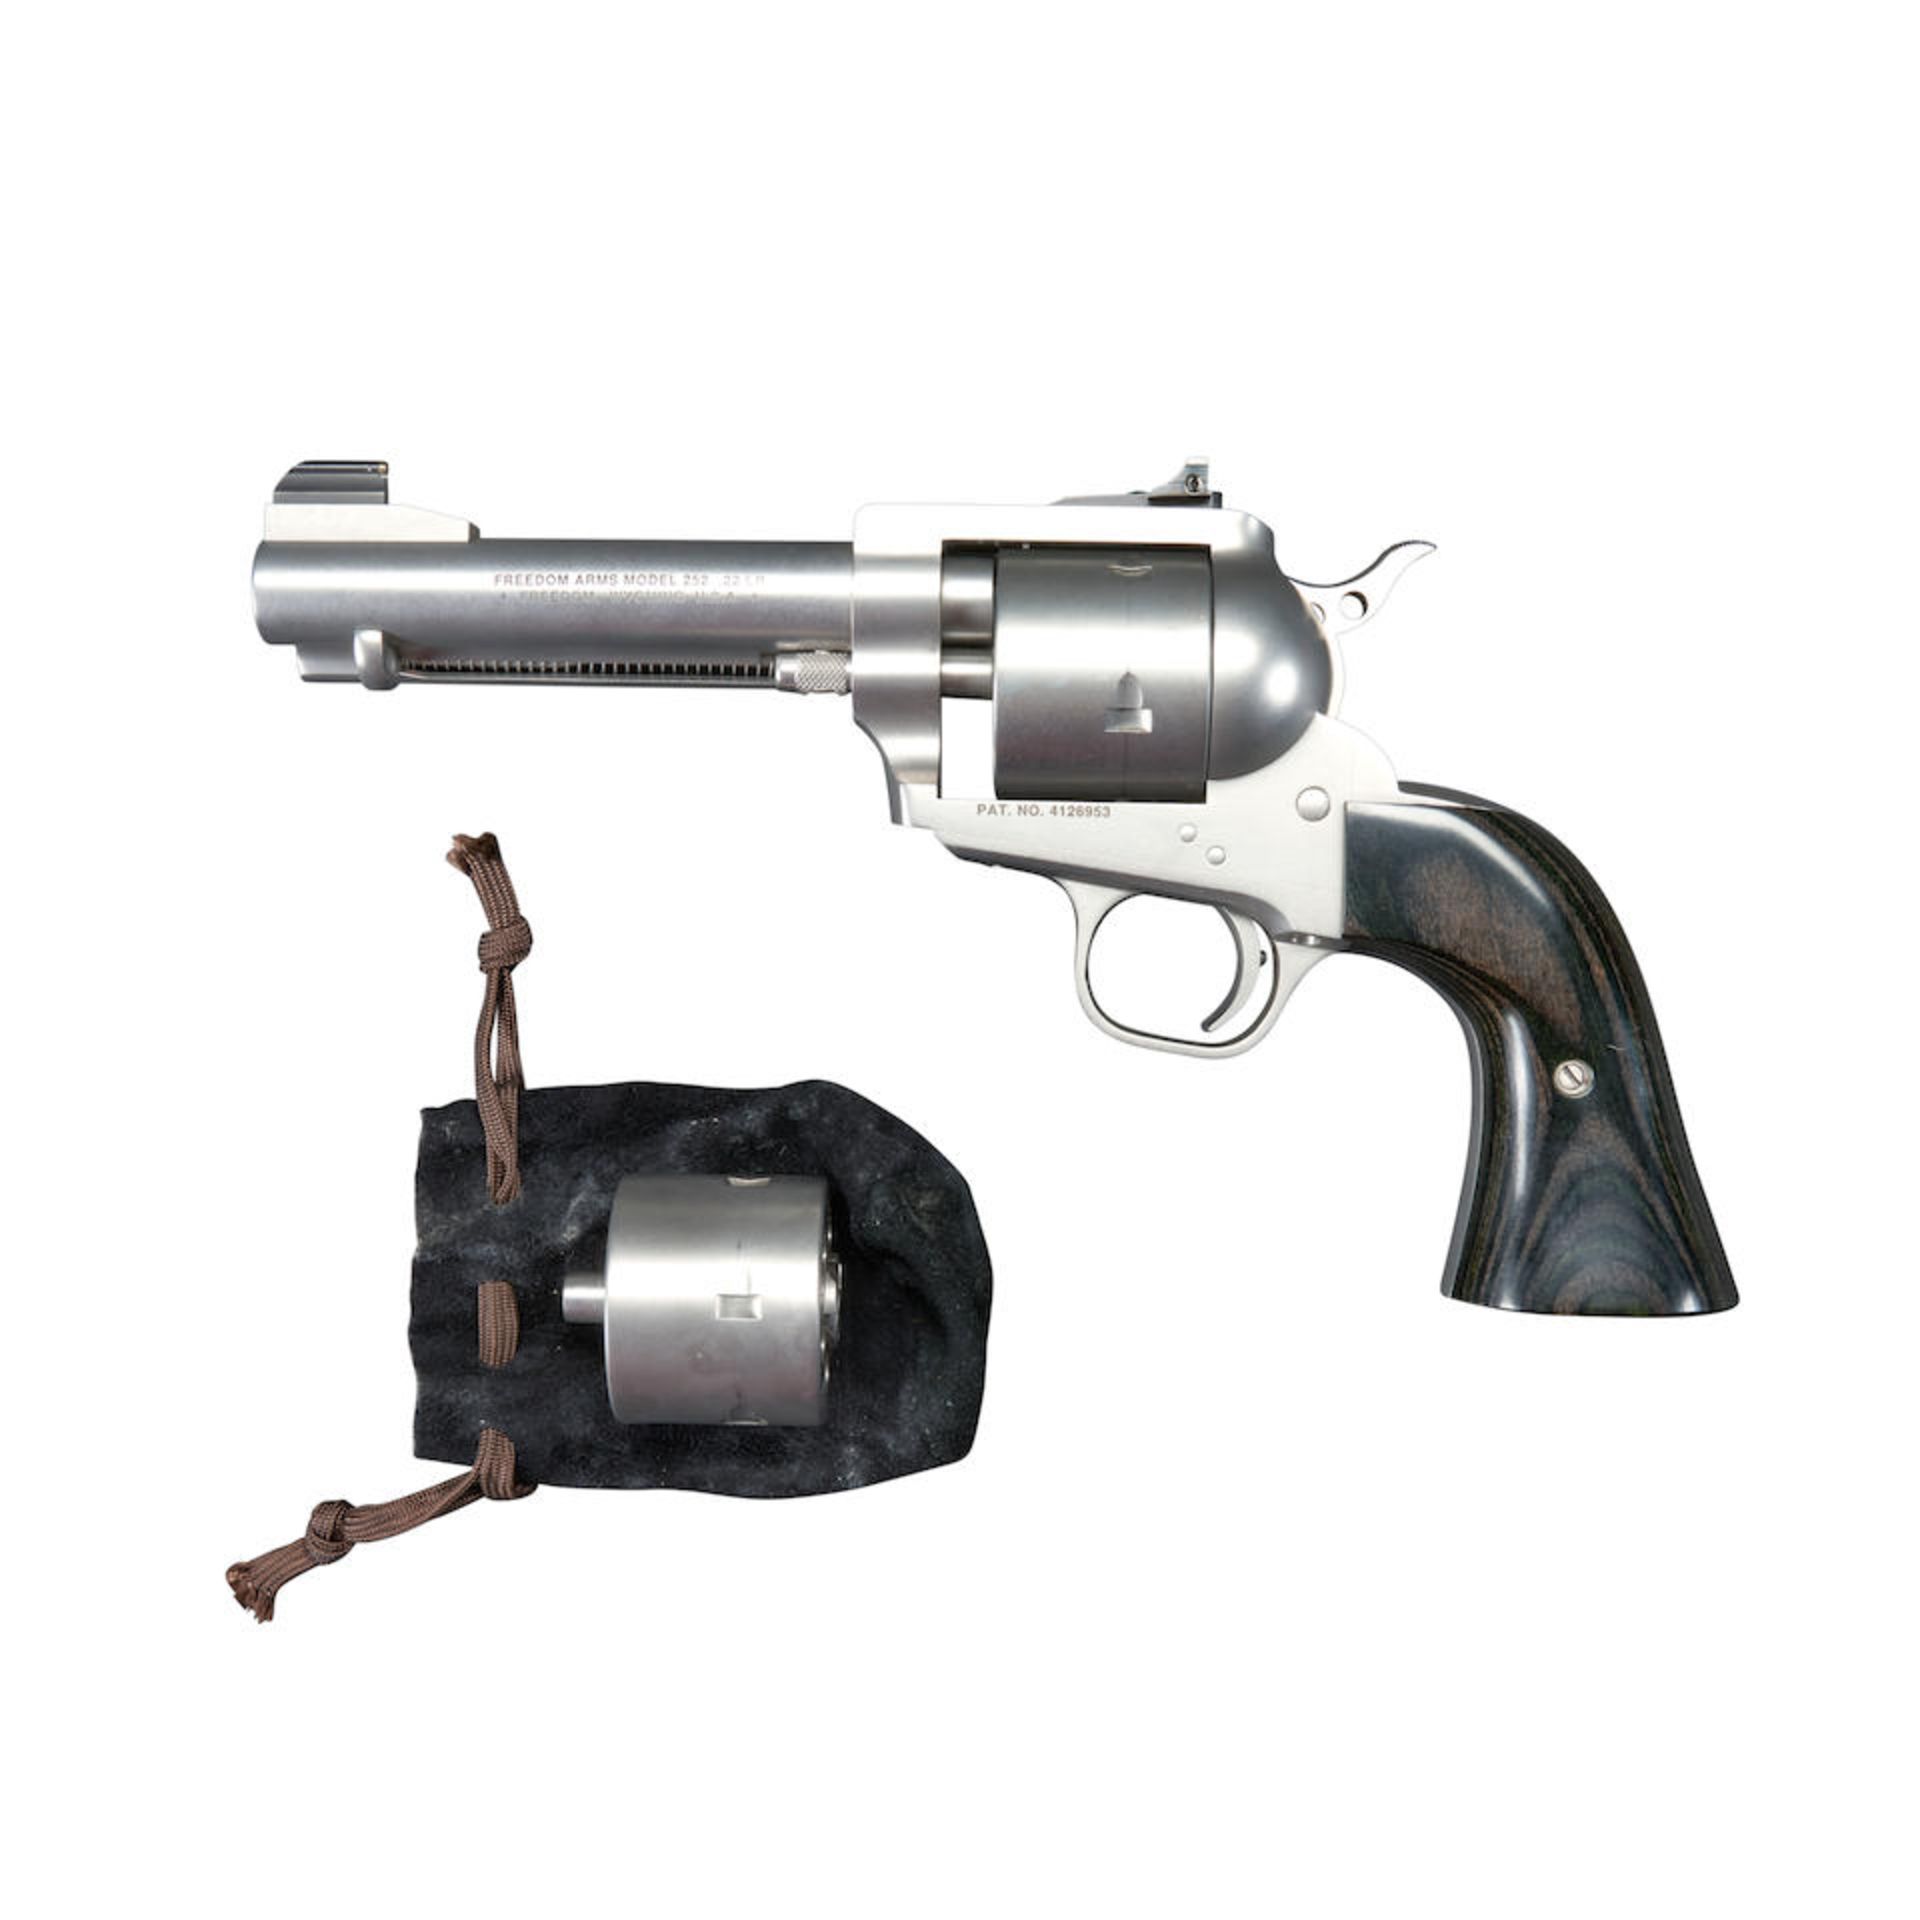 Freedom Arms Model 252 Single Action Revolver, Modern handgun - Bild 2 aus 3